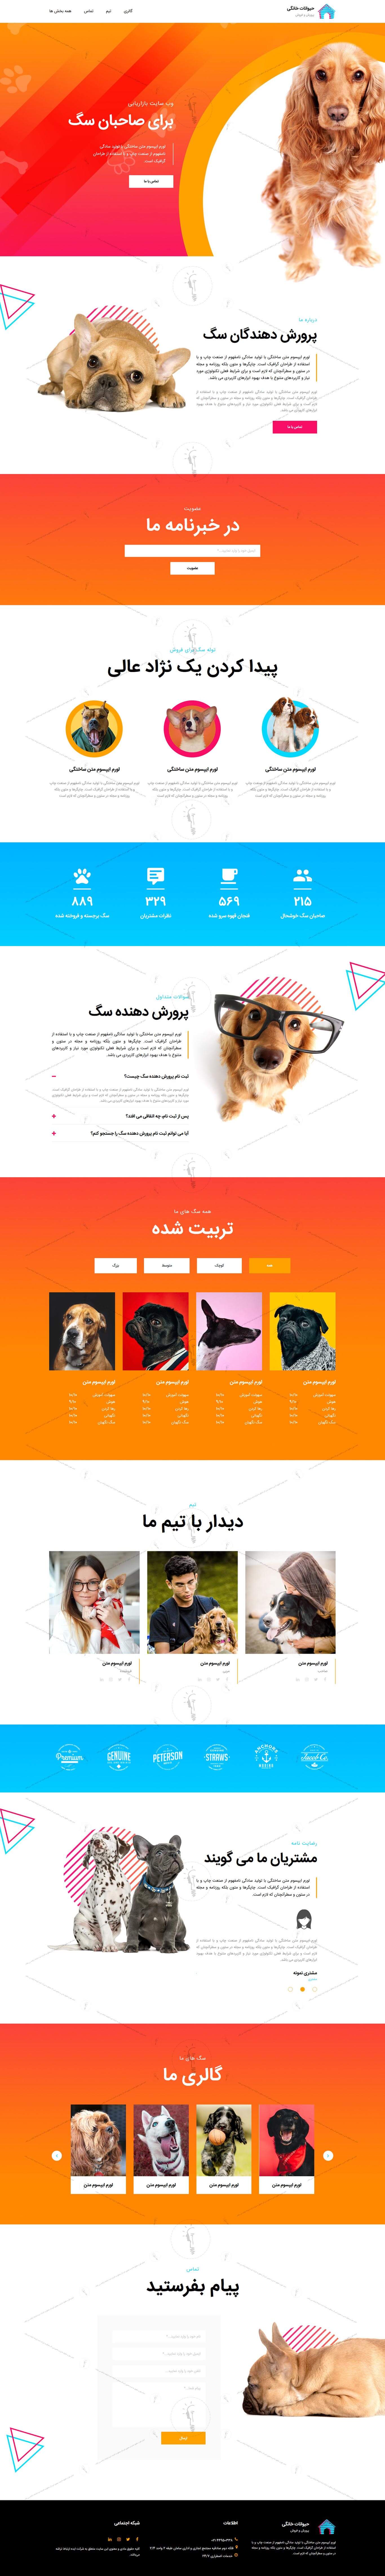 خرید قالب سایت و طراحی سایت پرورش دهندگان سگ